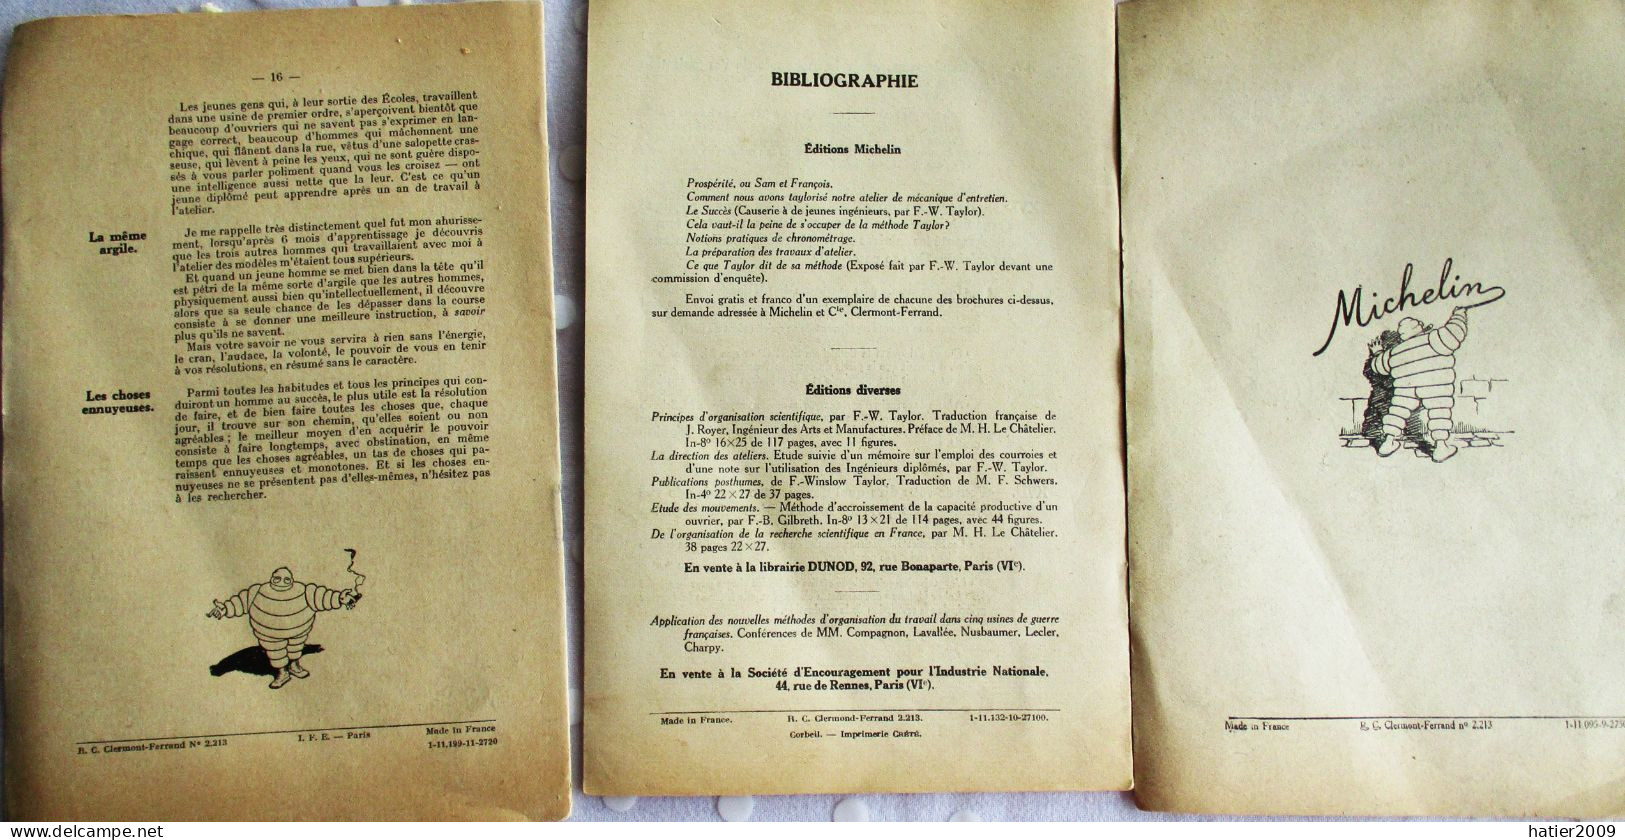 Les 3 Livrets De La Méthode Taylor Chez MICHELIN - 1927 - Avec Bibendum - Michelin (guide)